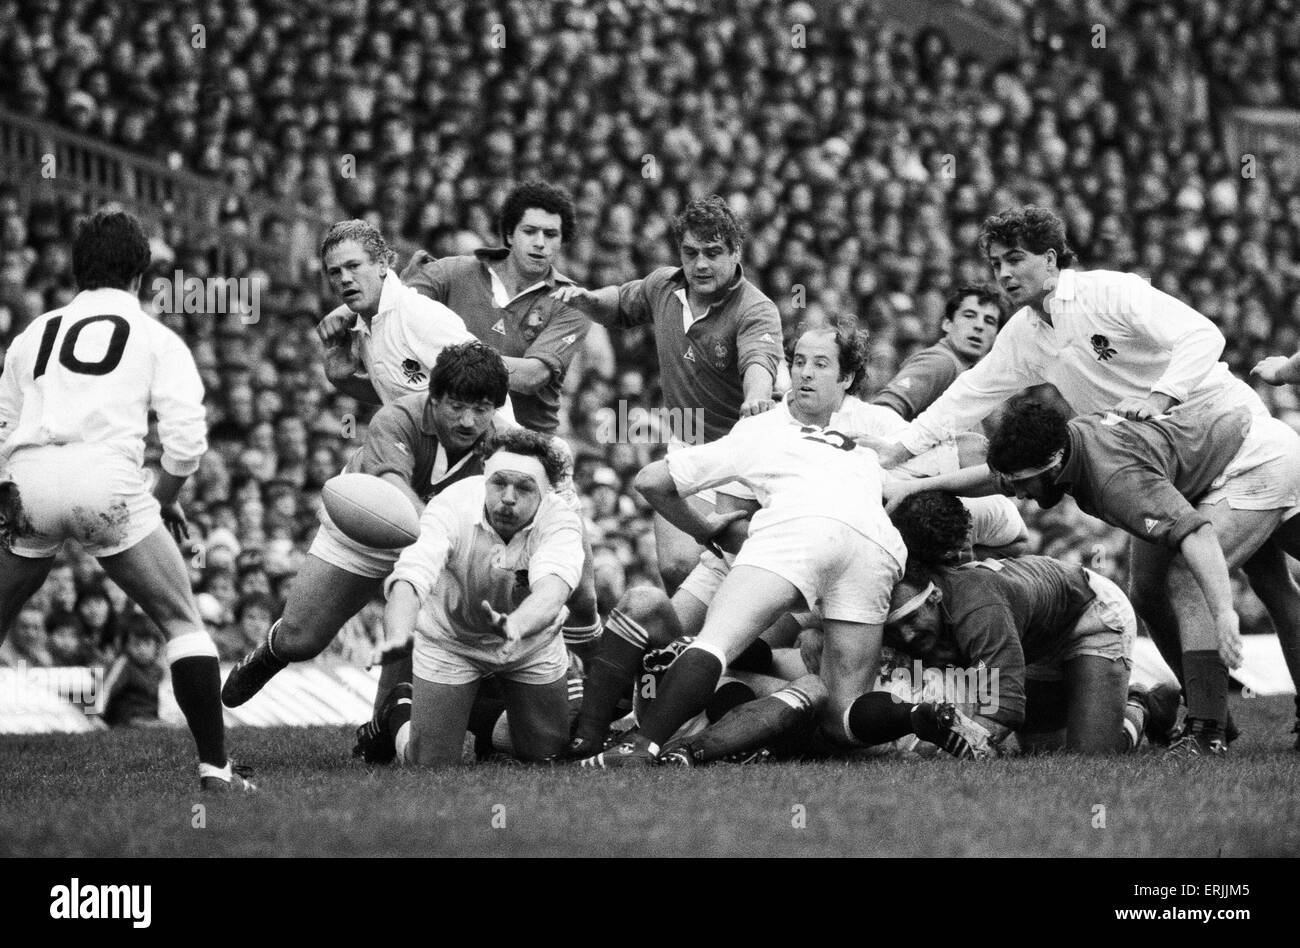 Il Rugby 5 Nazioni partita internazionale a Twickenham. Inghilterra 12 v Francia 16. Azione durante il match che coinvolgono l'Inghilterra del Bill Beaumont. Xxi Marzo 1981. Foto Stock